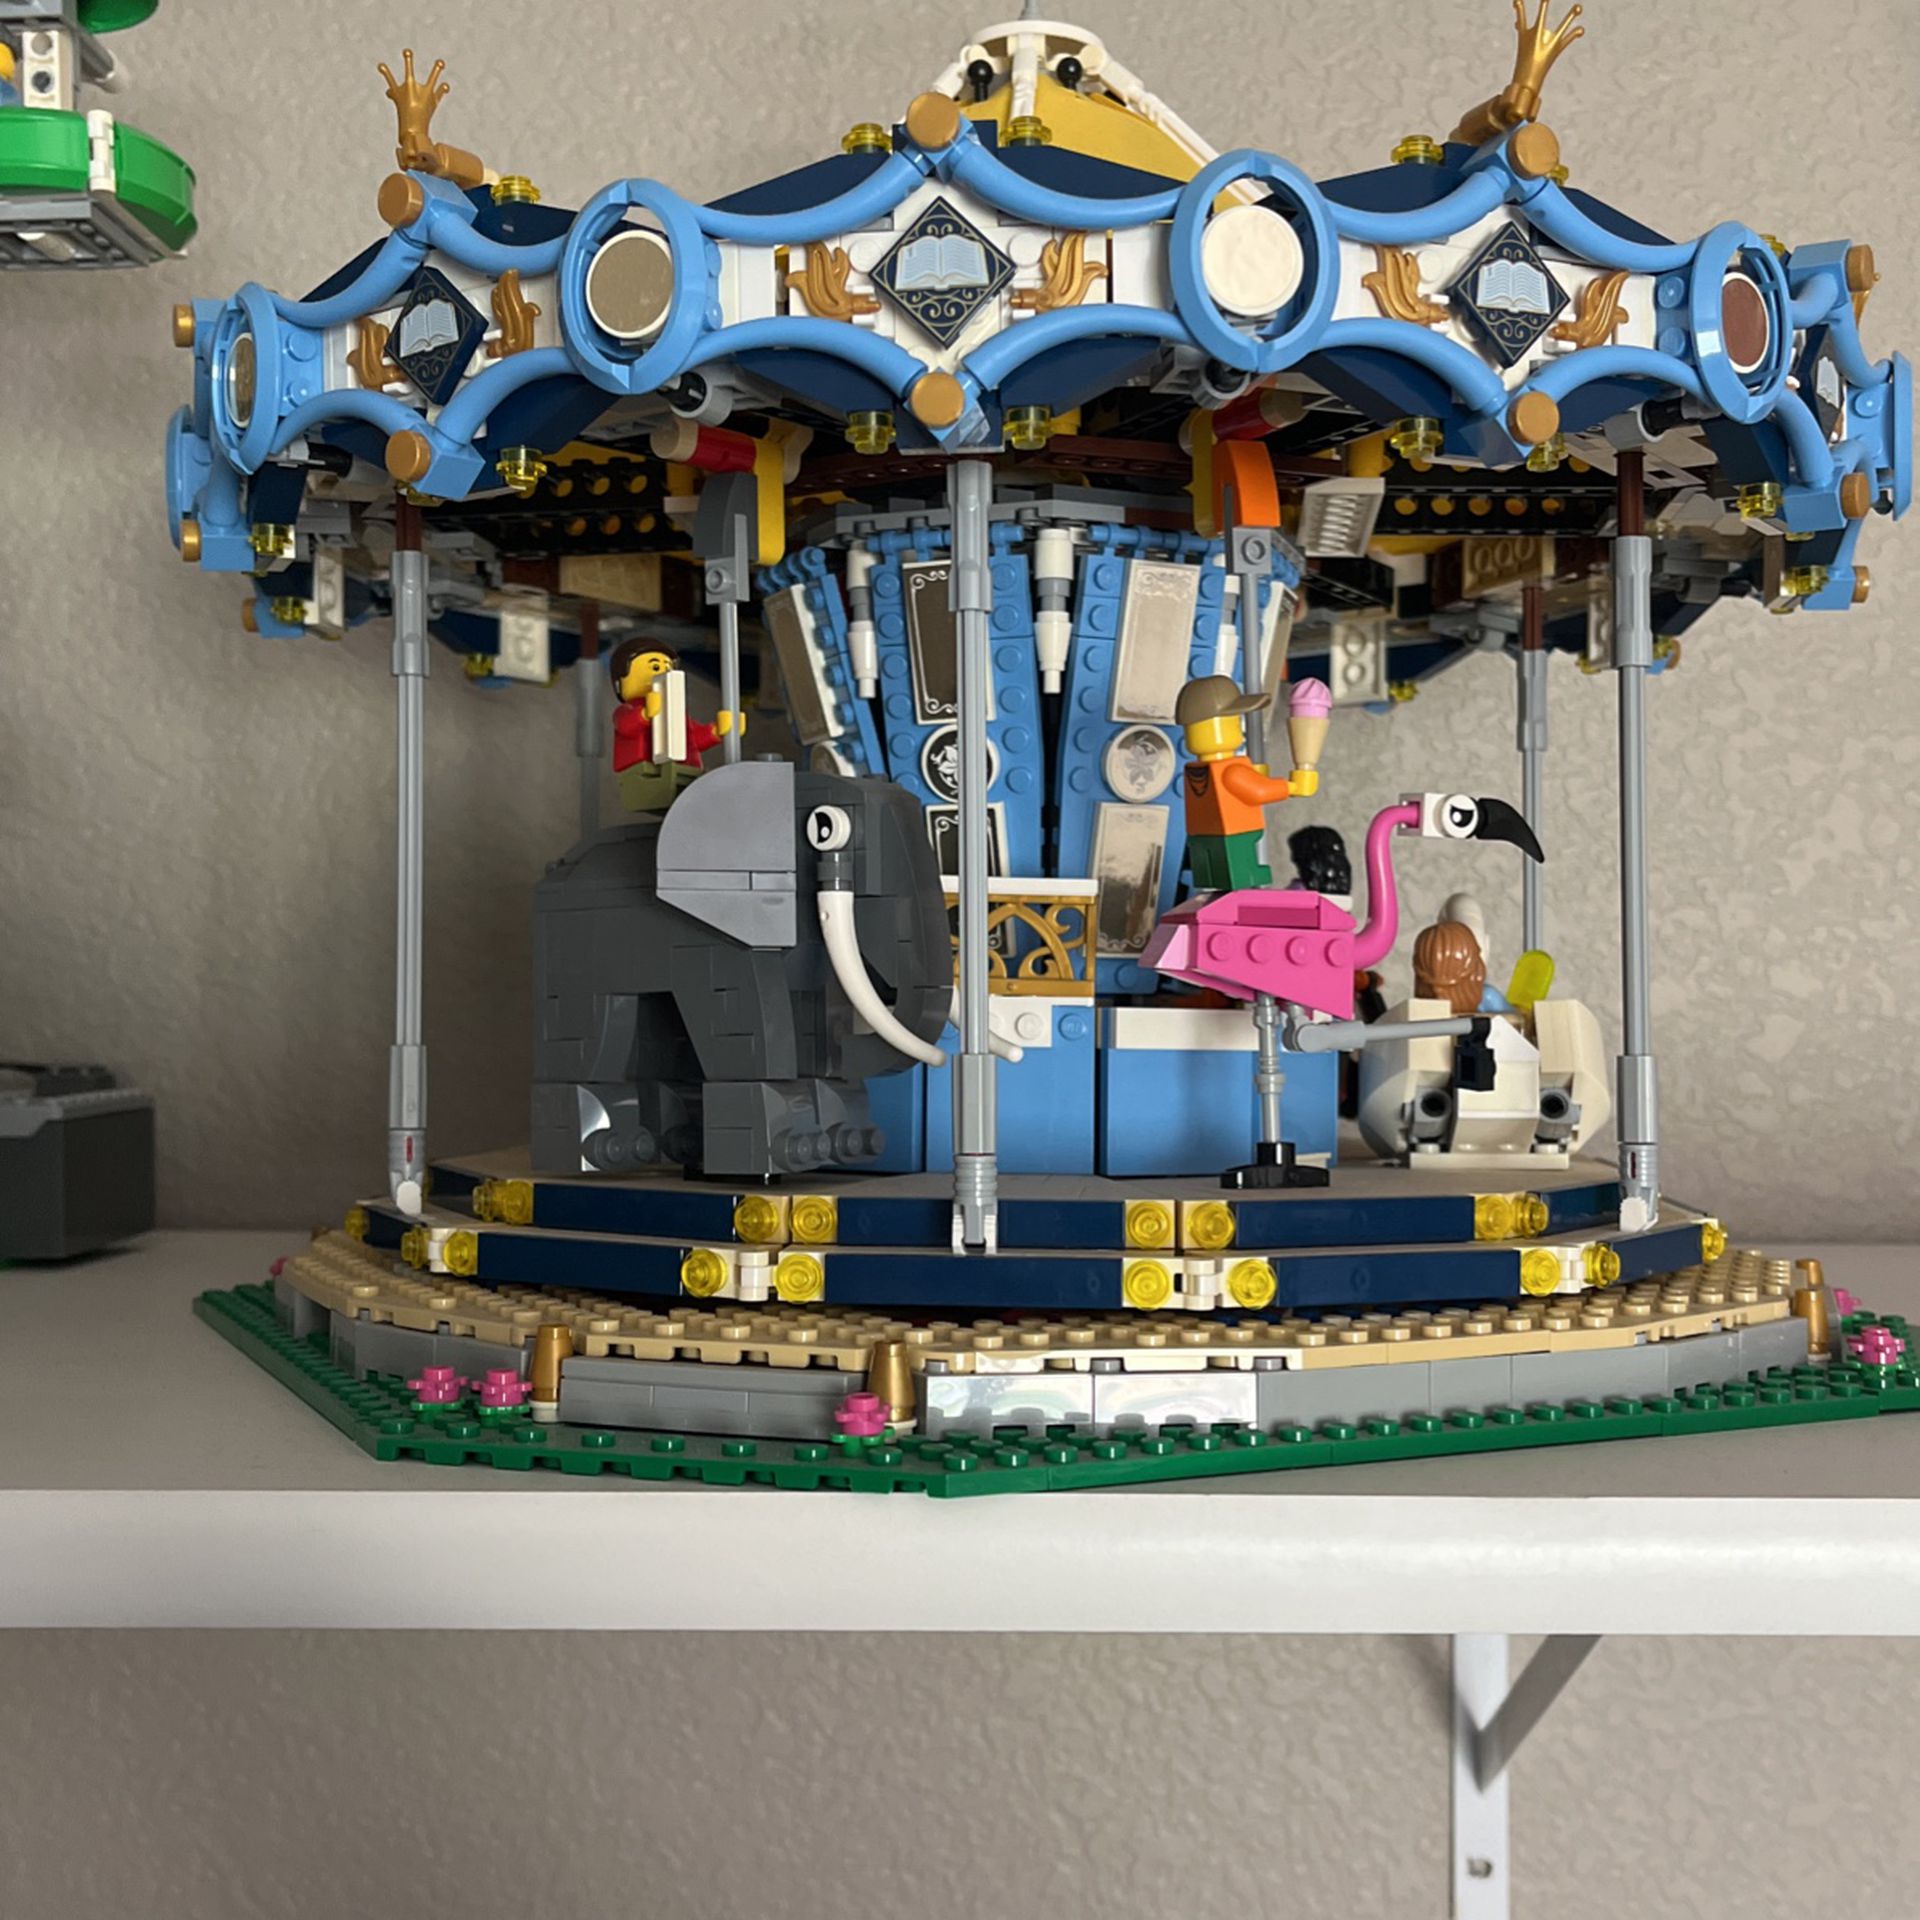 Trække ud buste Flagermus Lego Carousel (10257) for Sale in Parker, CO - OfferUp